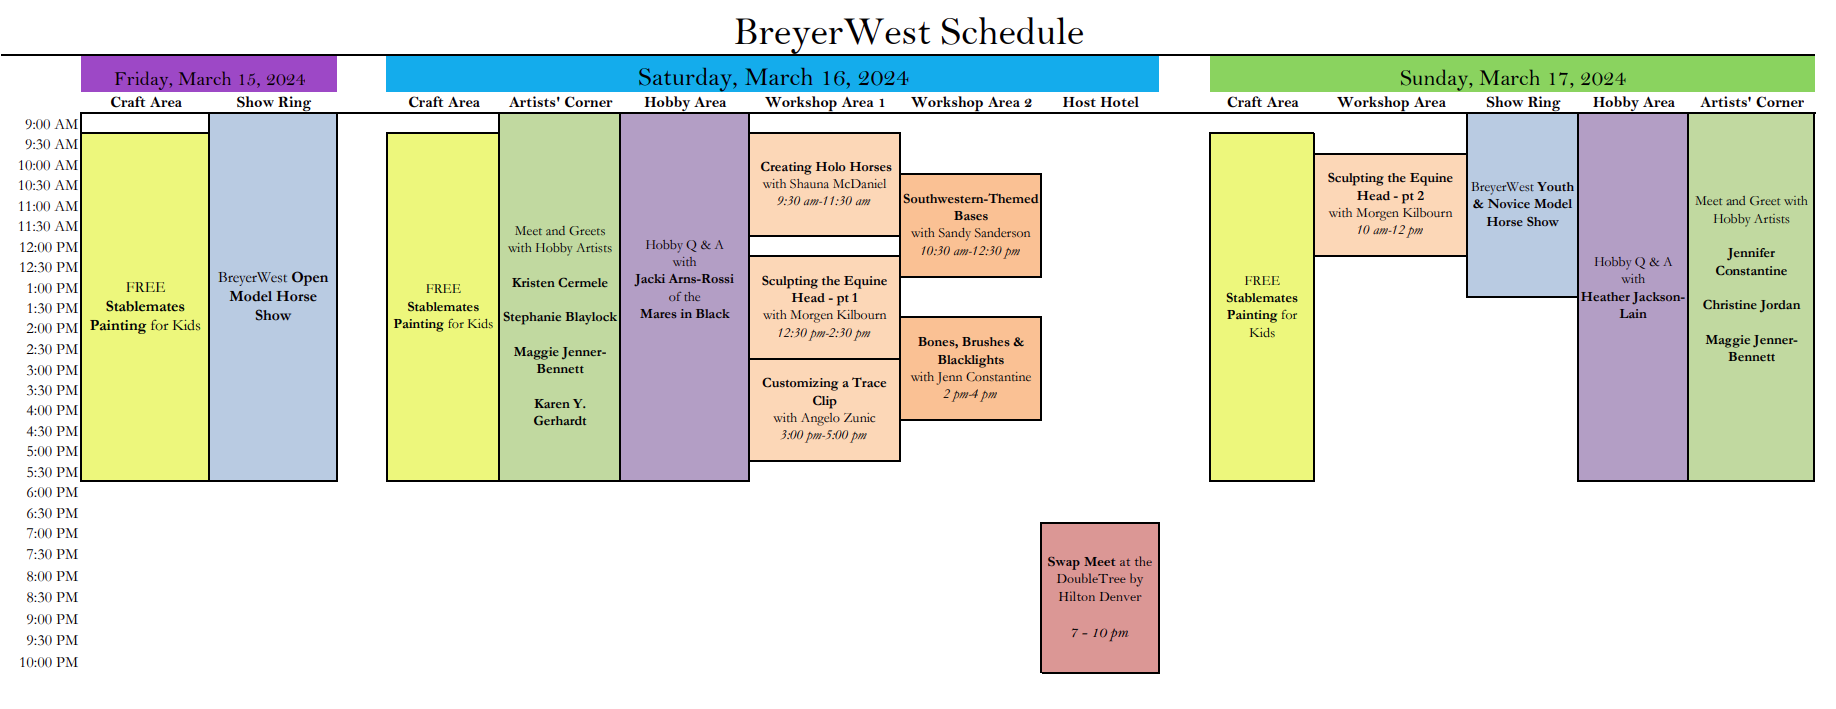 BreyerWest Schedule